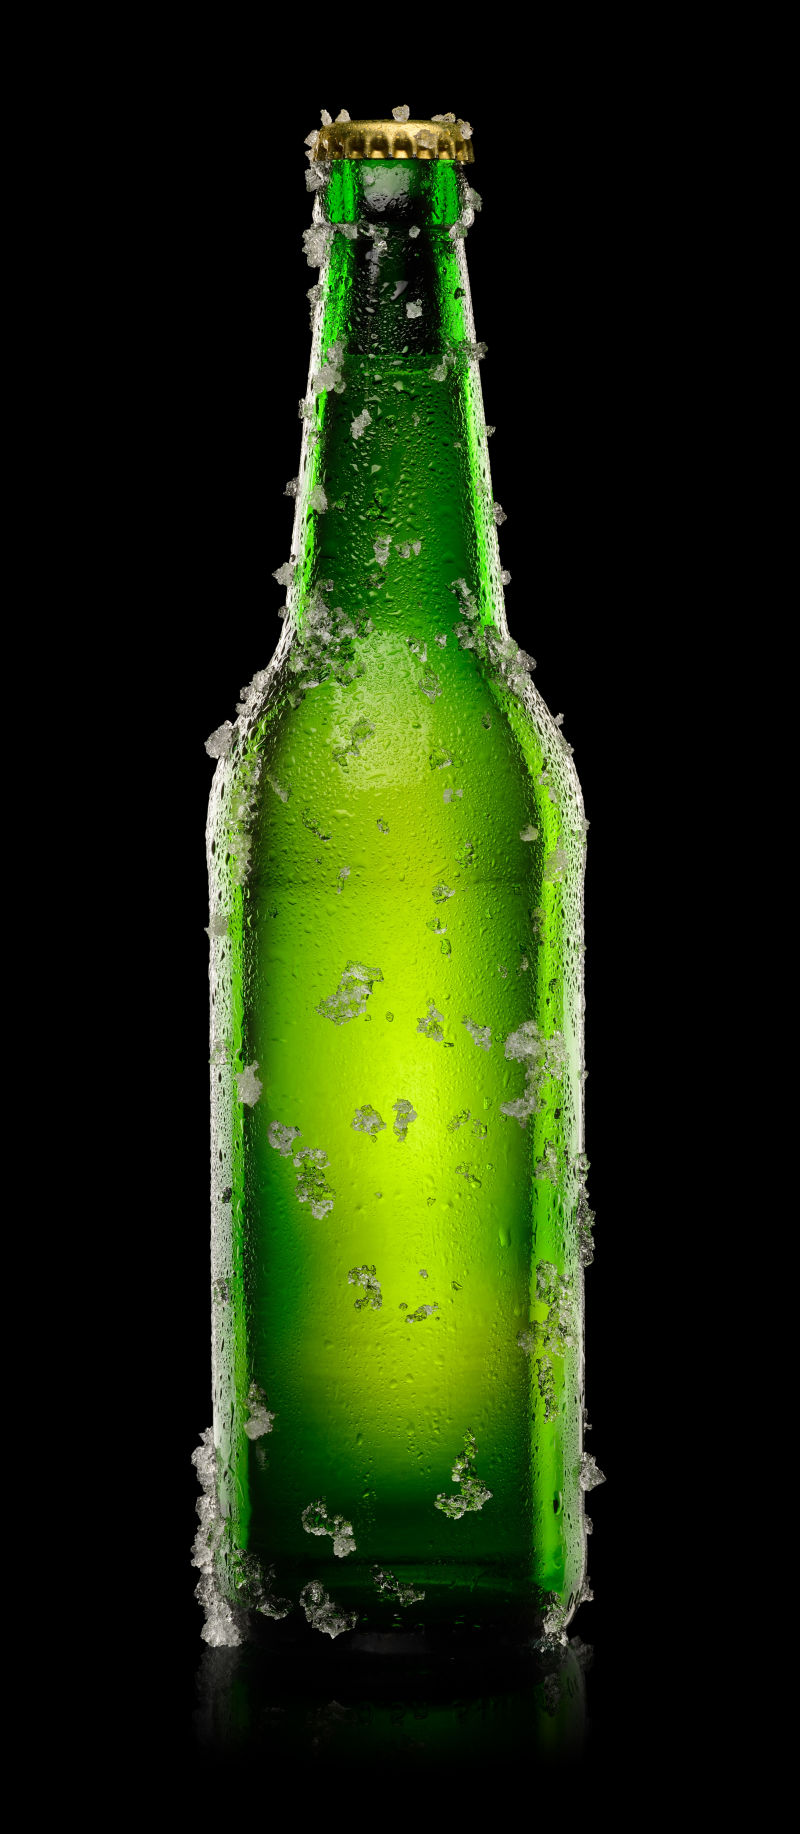 占冰的绿色啤酒瓶